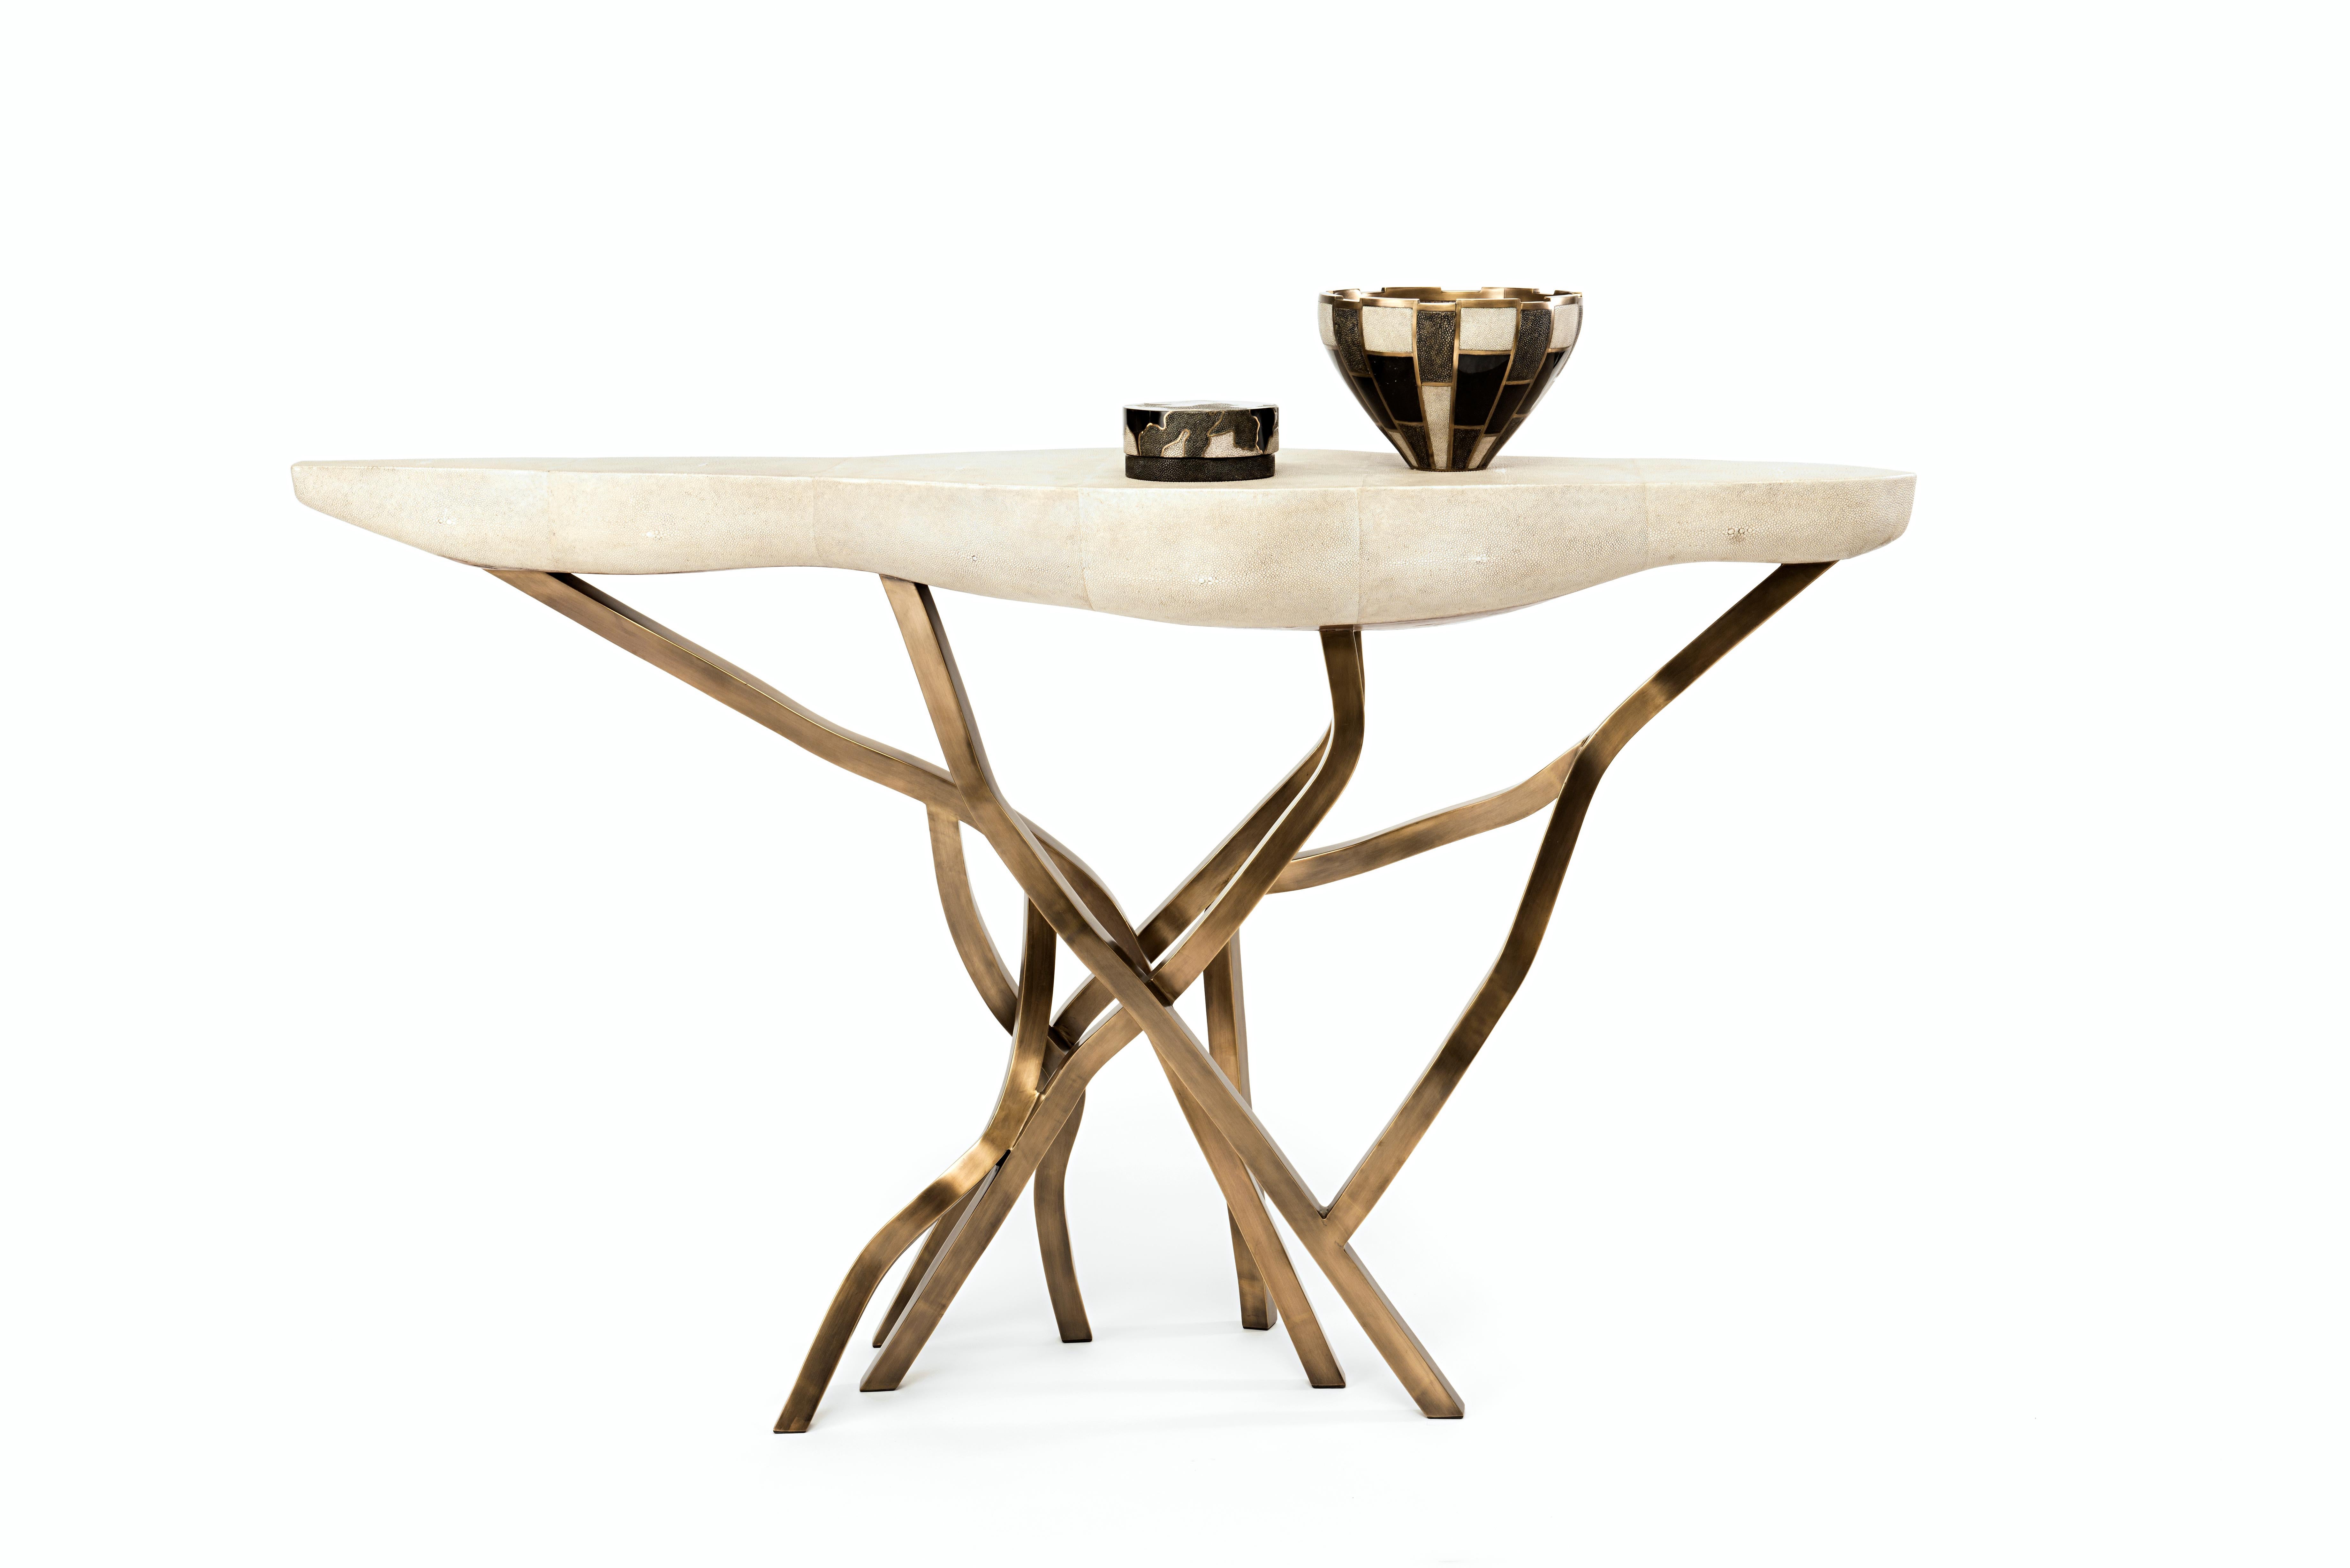 La table console Acacia est un élément spectaculaire dans n'importe quel espace. Le plateau de forme amorphe est en crème et les pieds de forme organique sont en laiton bronze-patina. Disponible également en coque noire, voir les images à la fin de